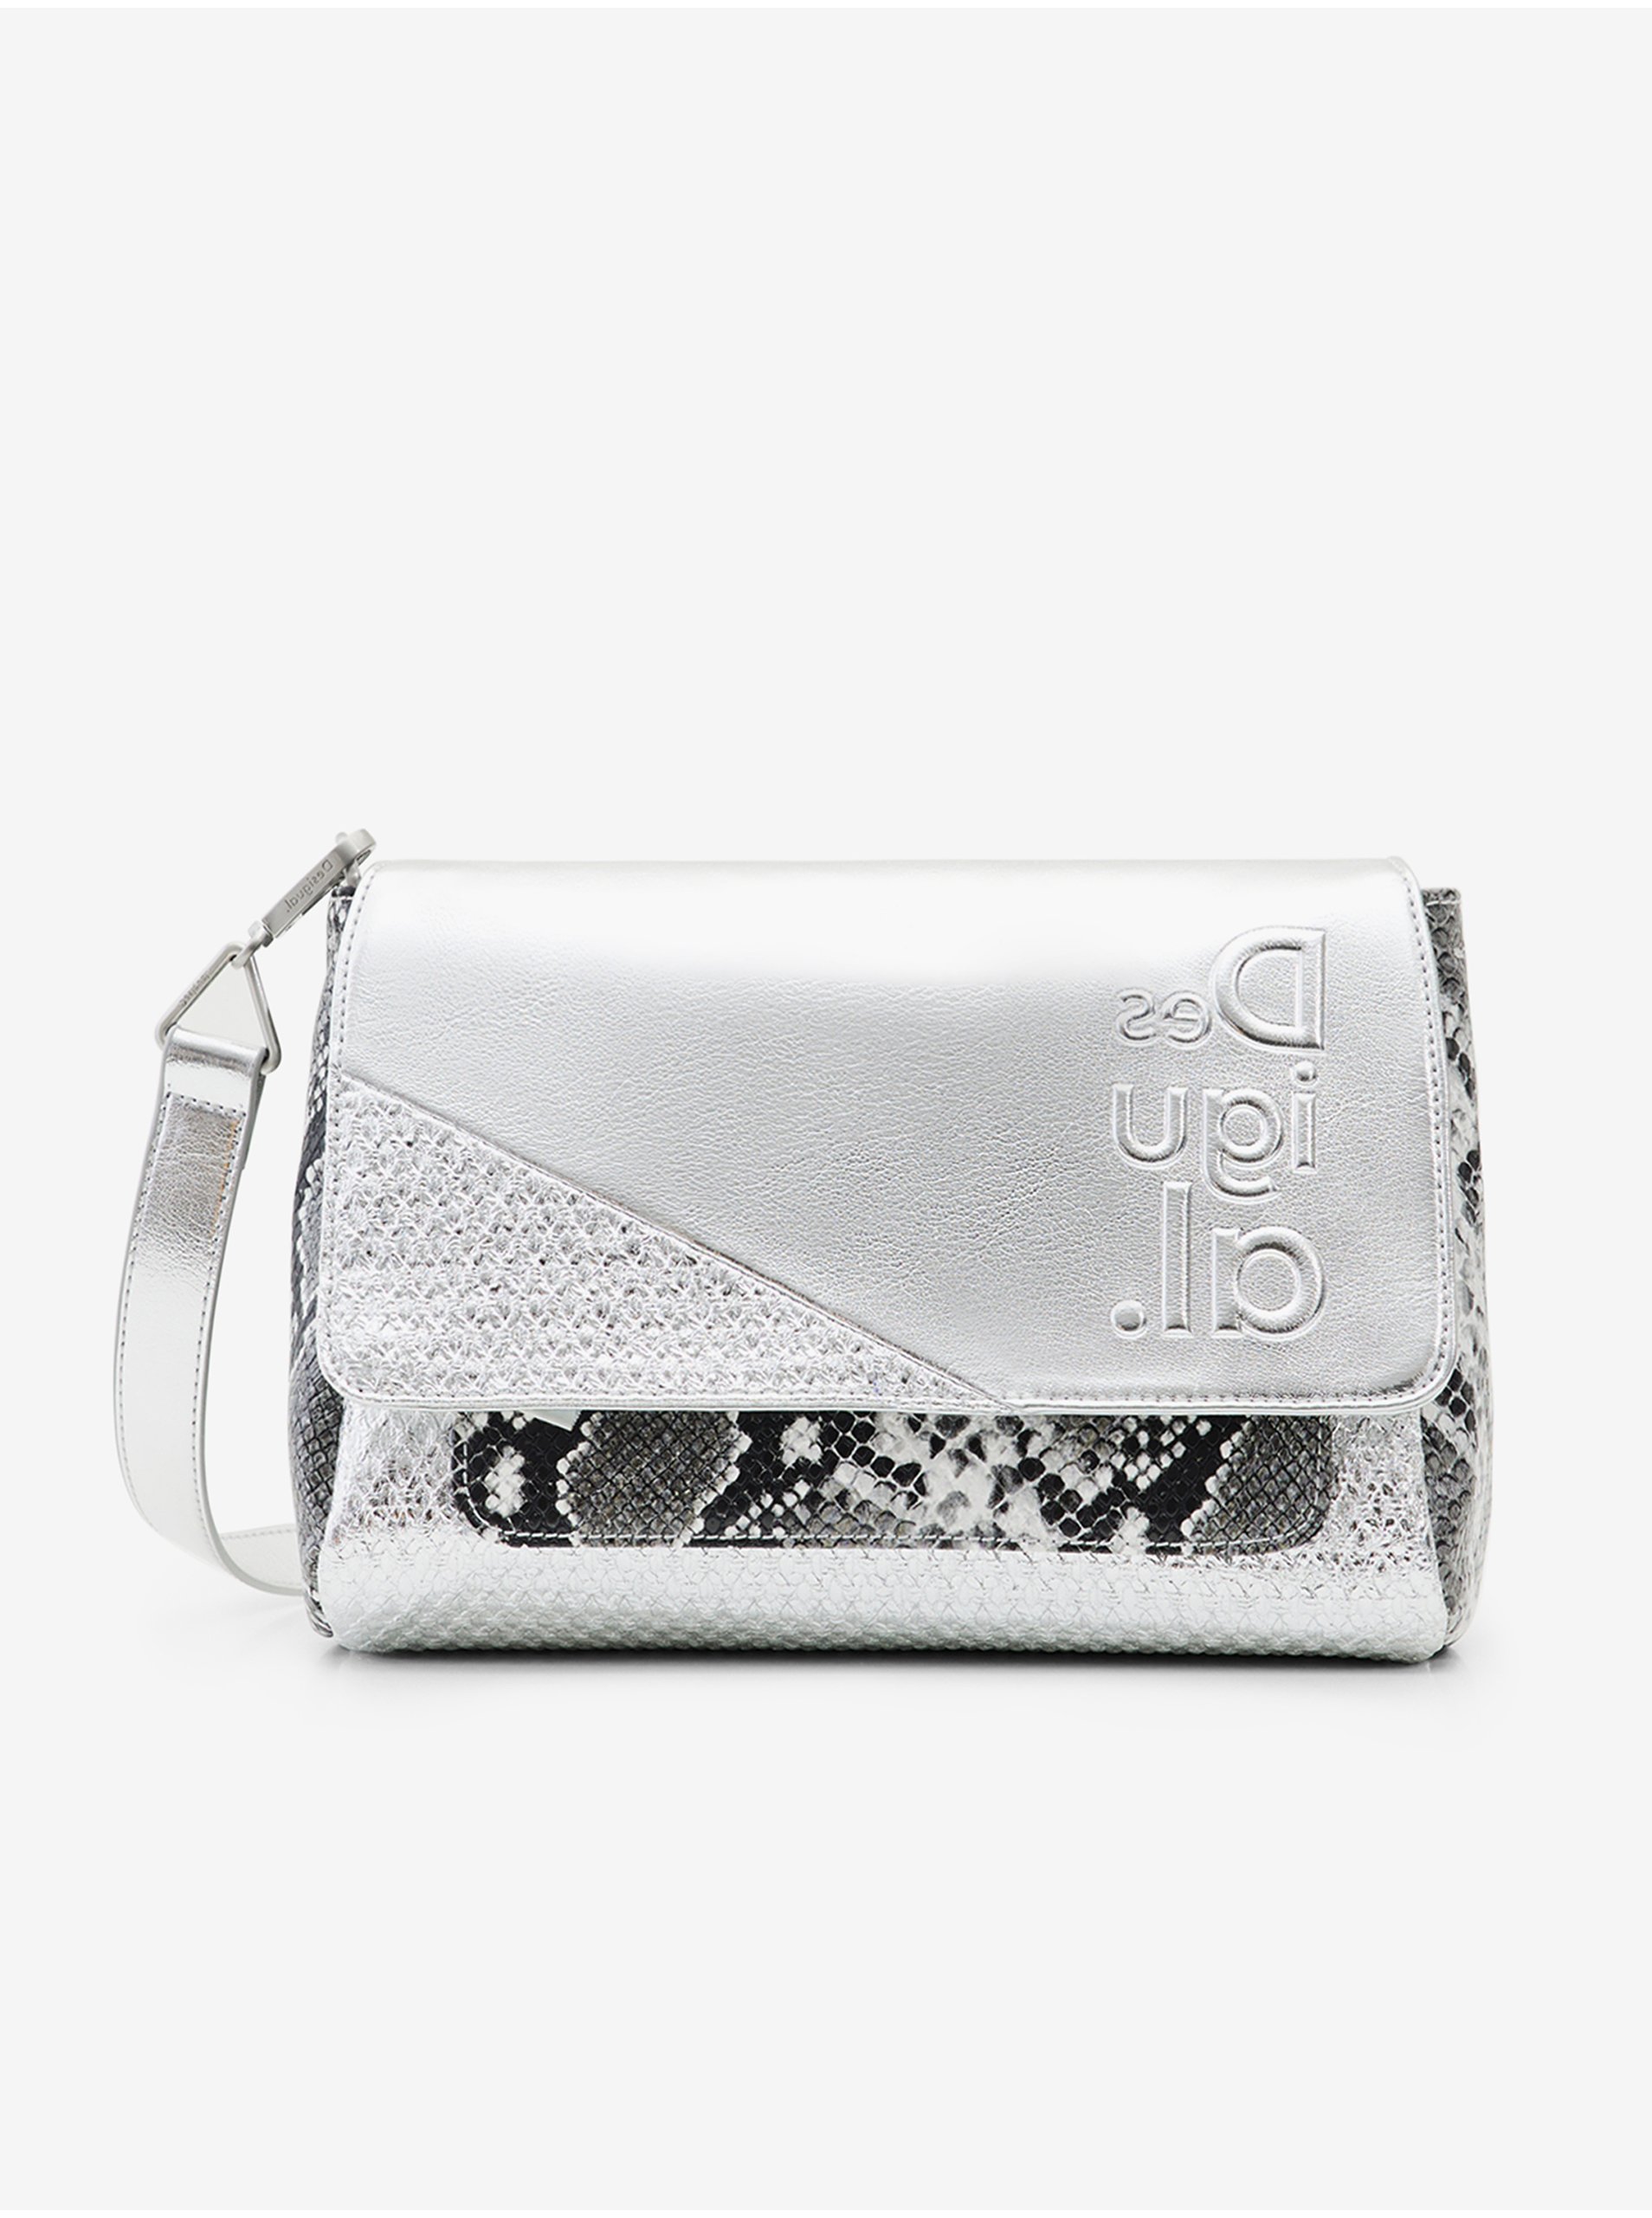 Desigual Delta Silver Copenhagen Handbag - Ladies